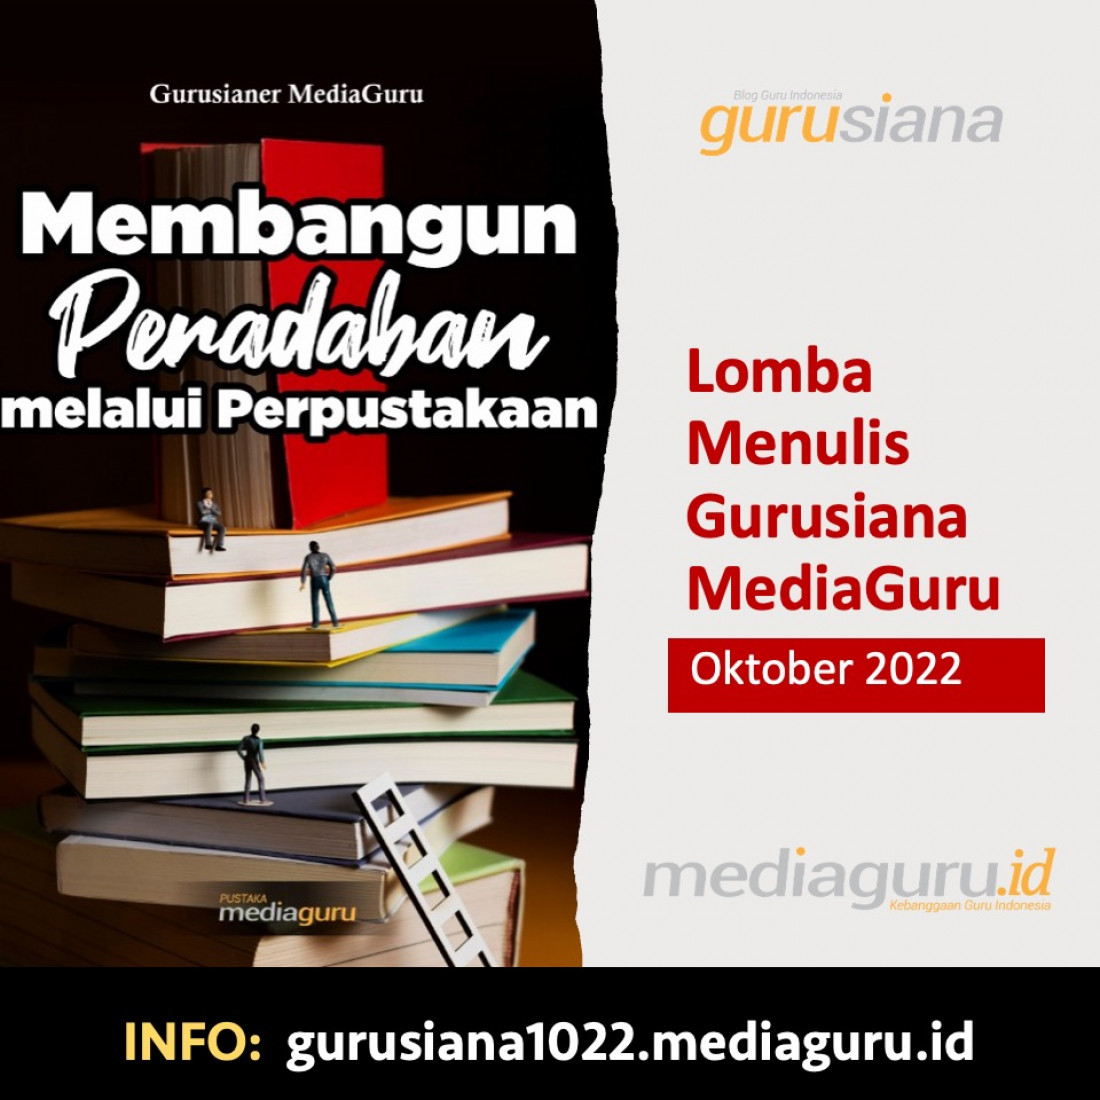 Lomba menulis Gurusiana MediaGuru Oktober 2022